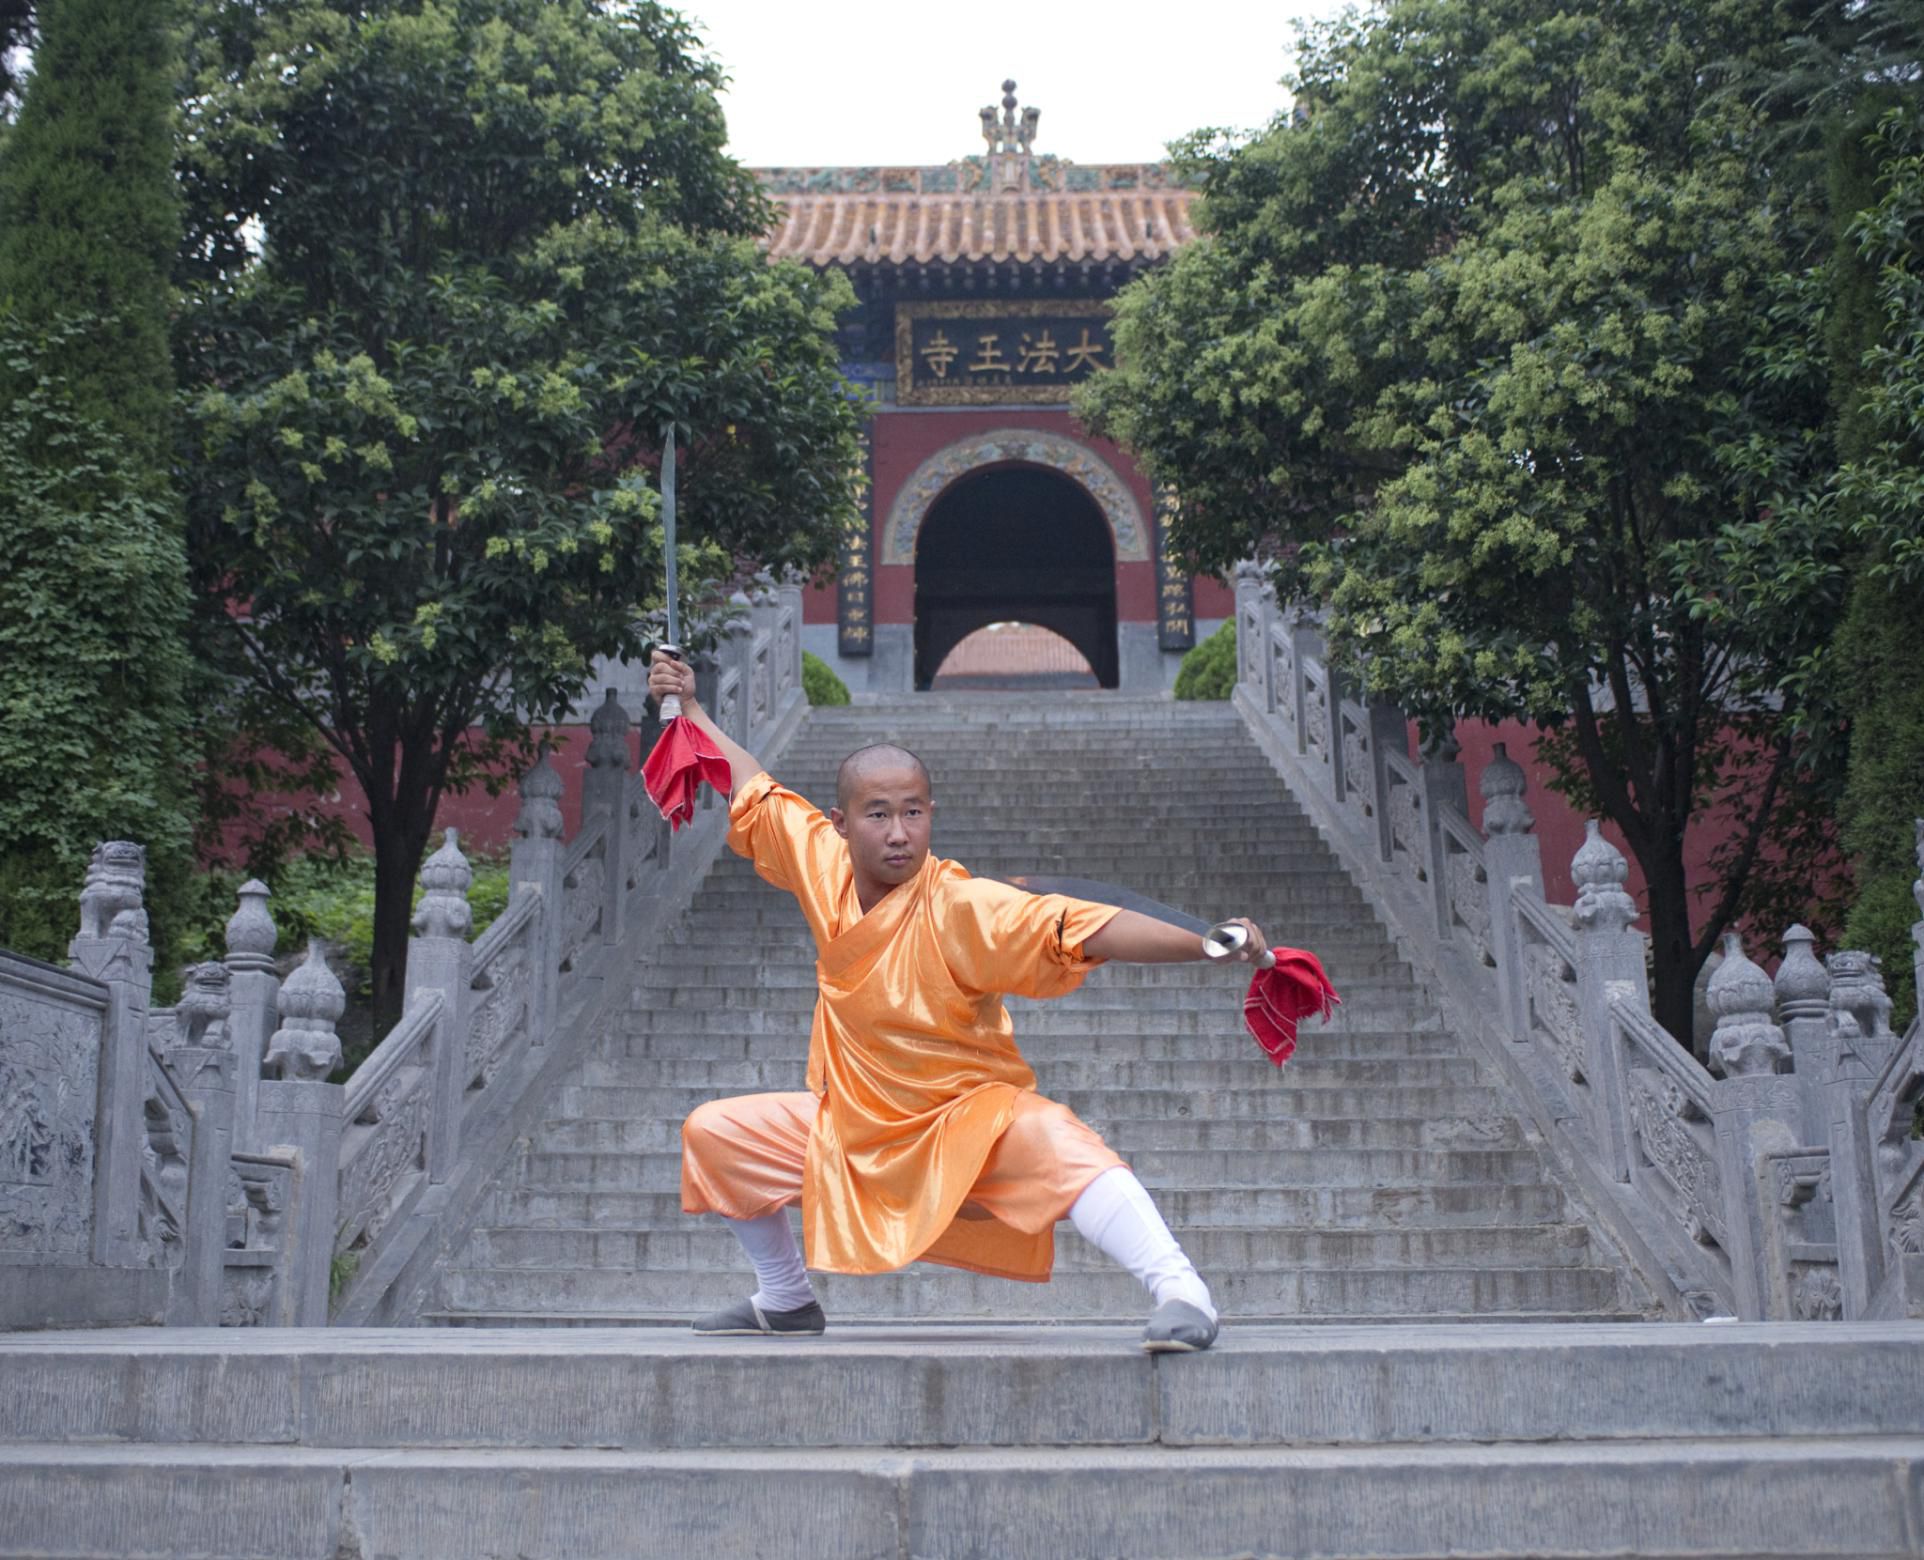 Comparación de las artes marciales externas de Shaolin y las internas de Wudang